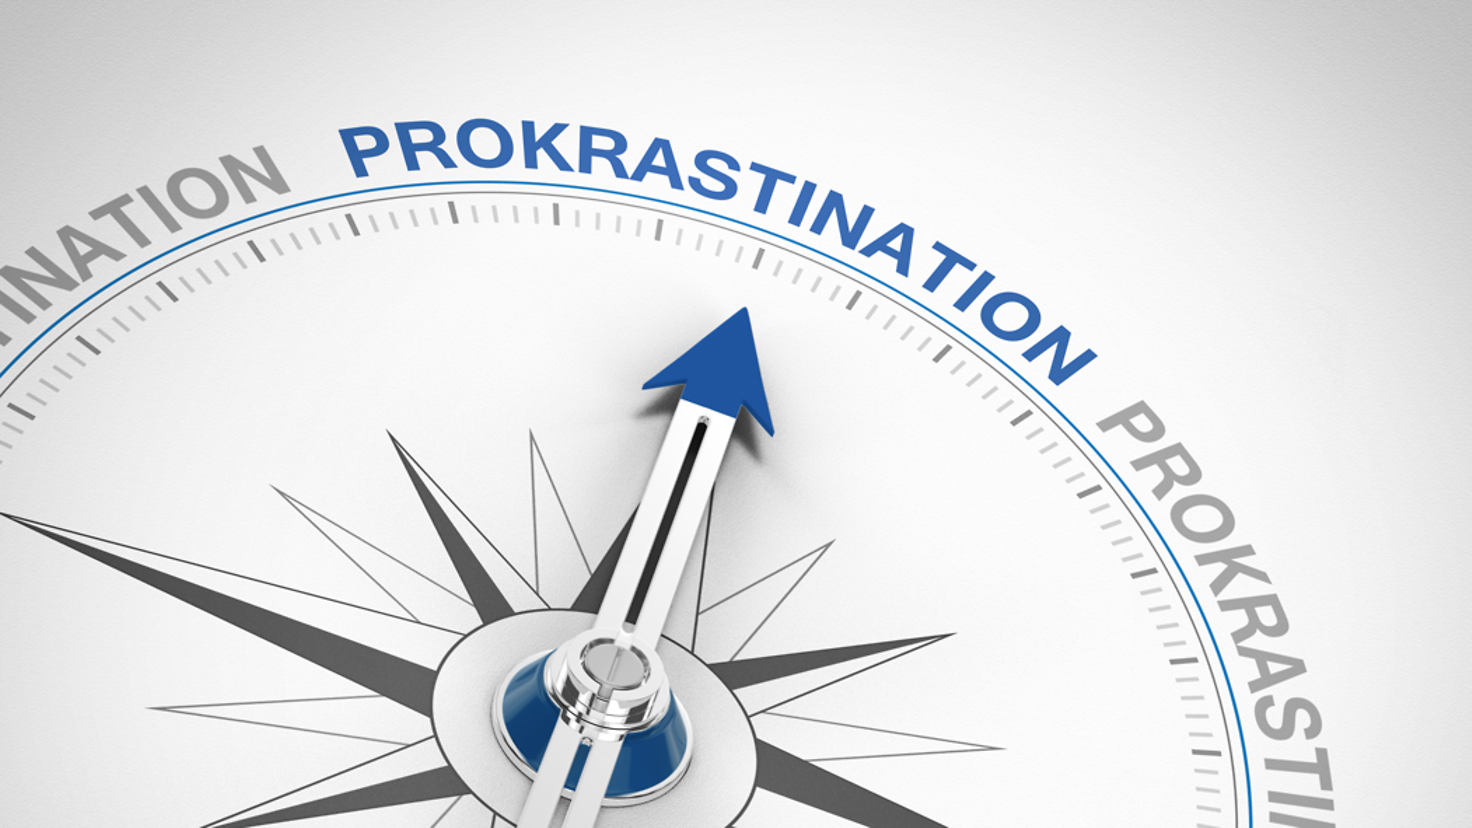 Zu sehen ist ein Kompass, dessen zeiger auf den Schriftzug "Prokrastination" zeigt